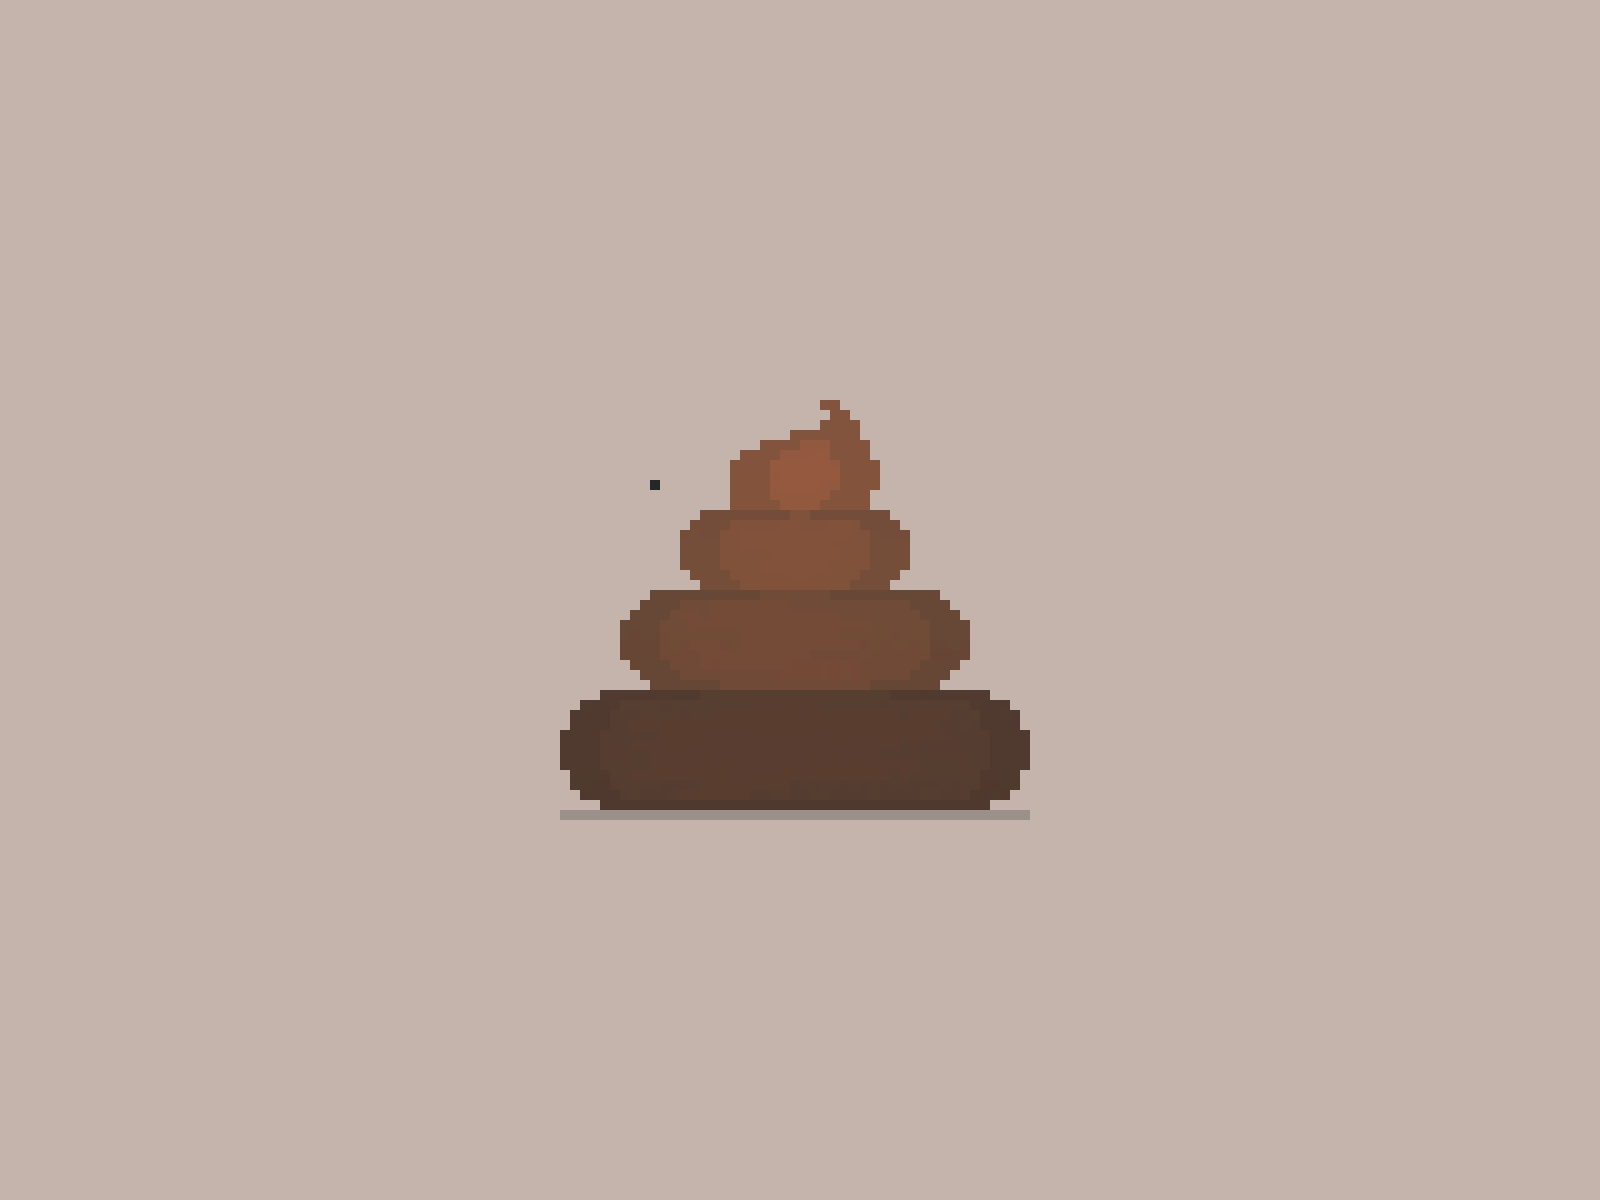 Poop [Pixel Art]